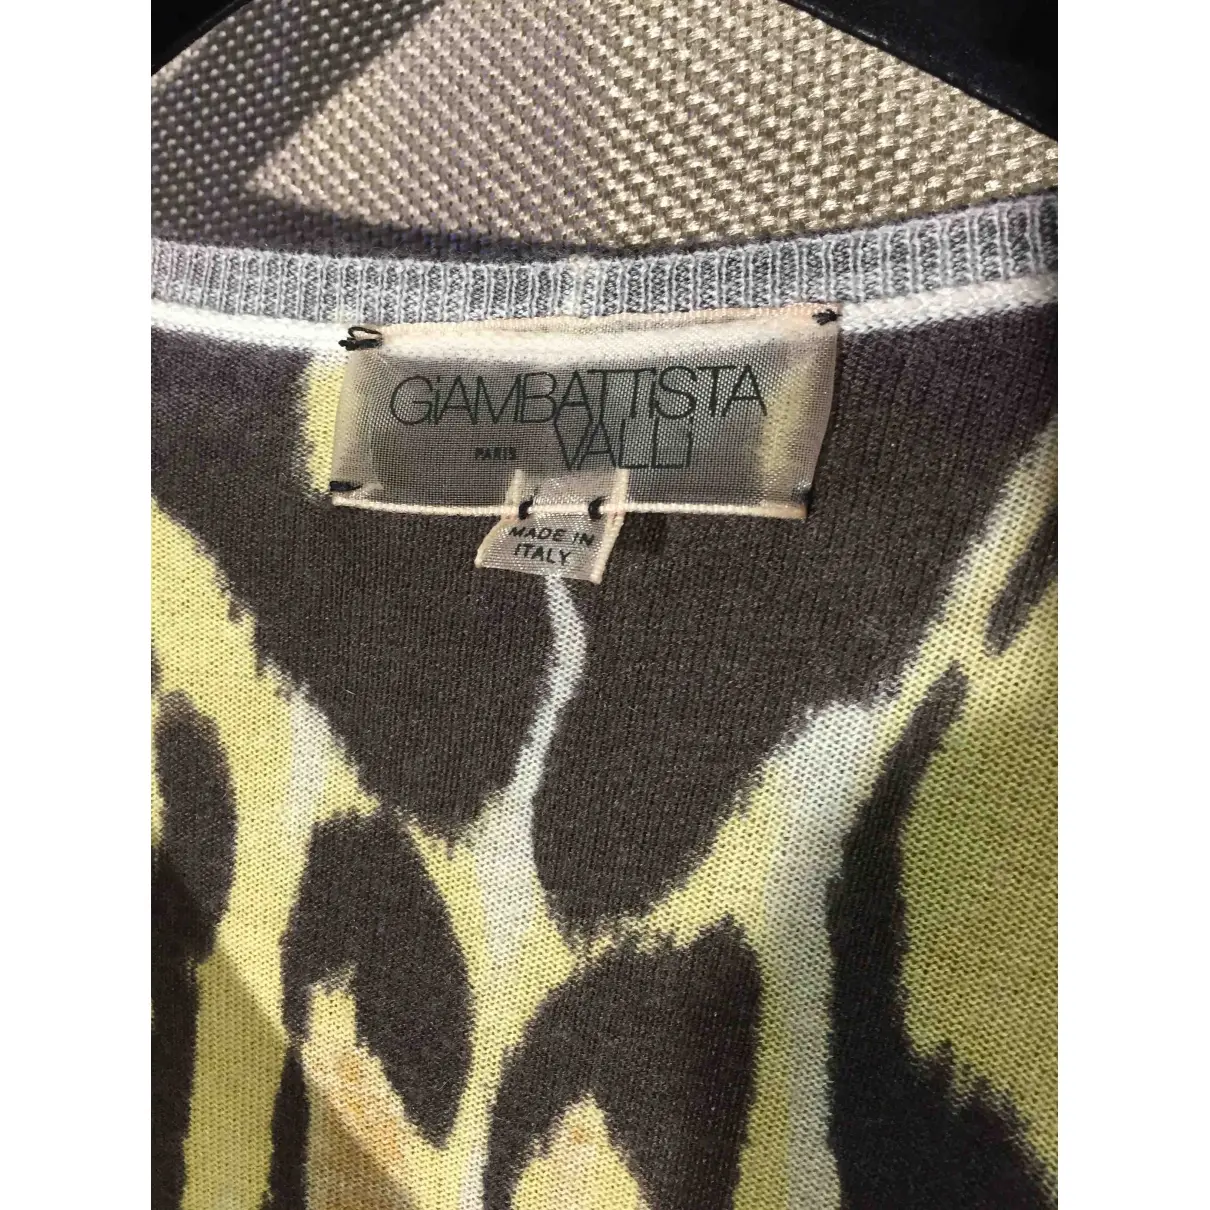 Buy Giambattista Valli Cashmere jumper online